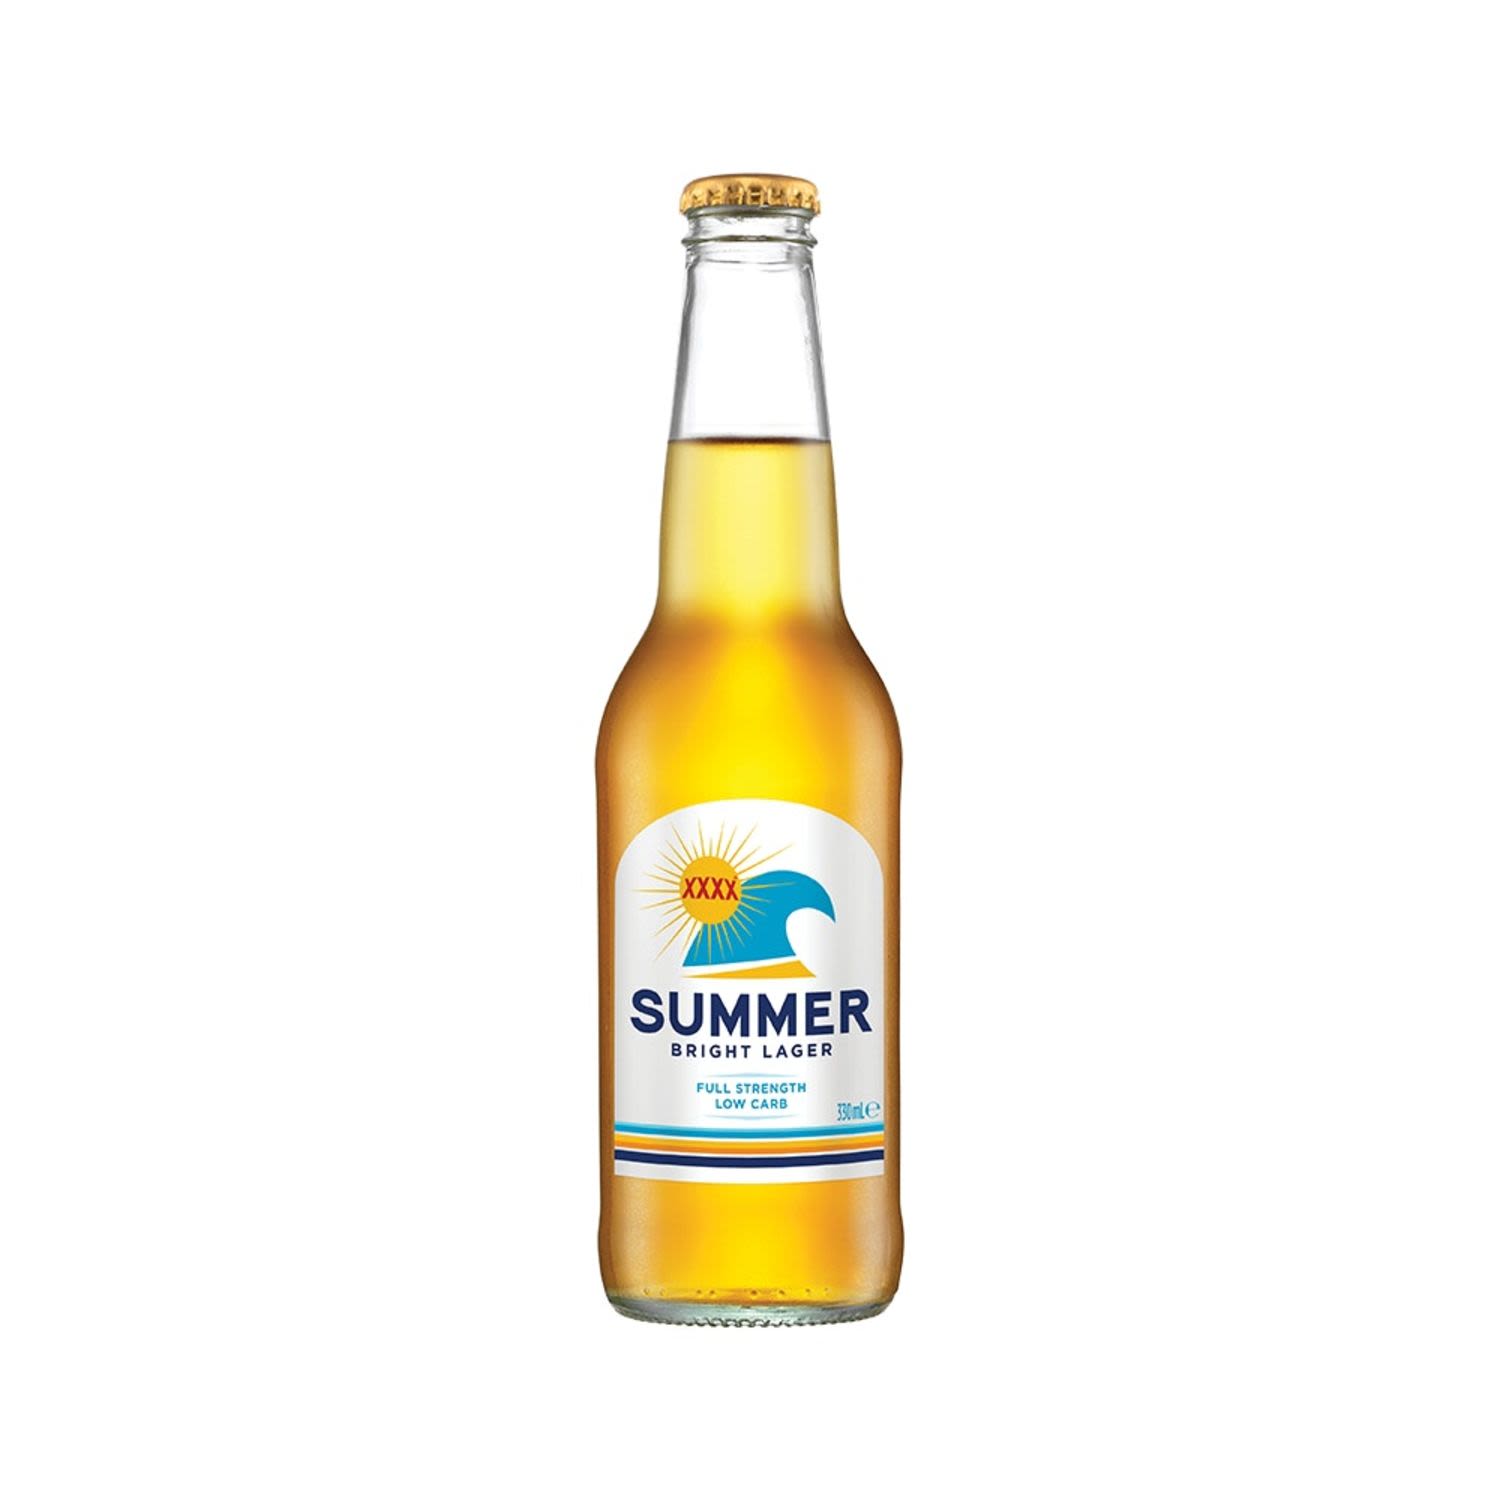 XXXX Summer Bright Lager Bottle 330mL